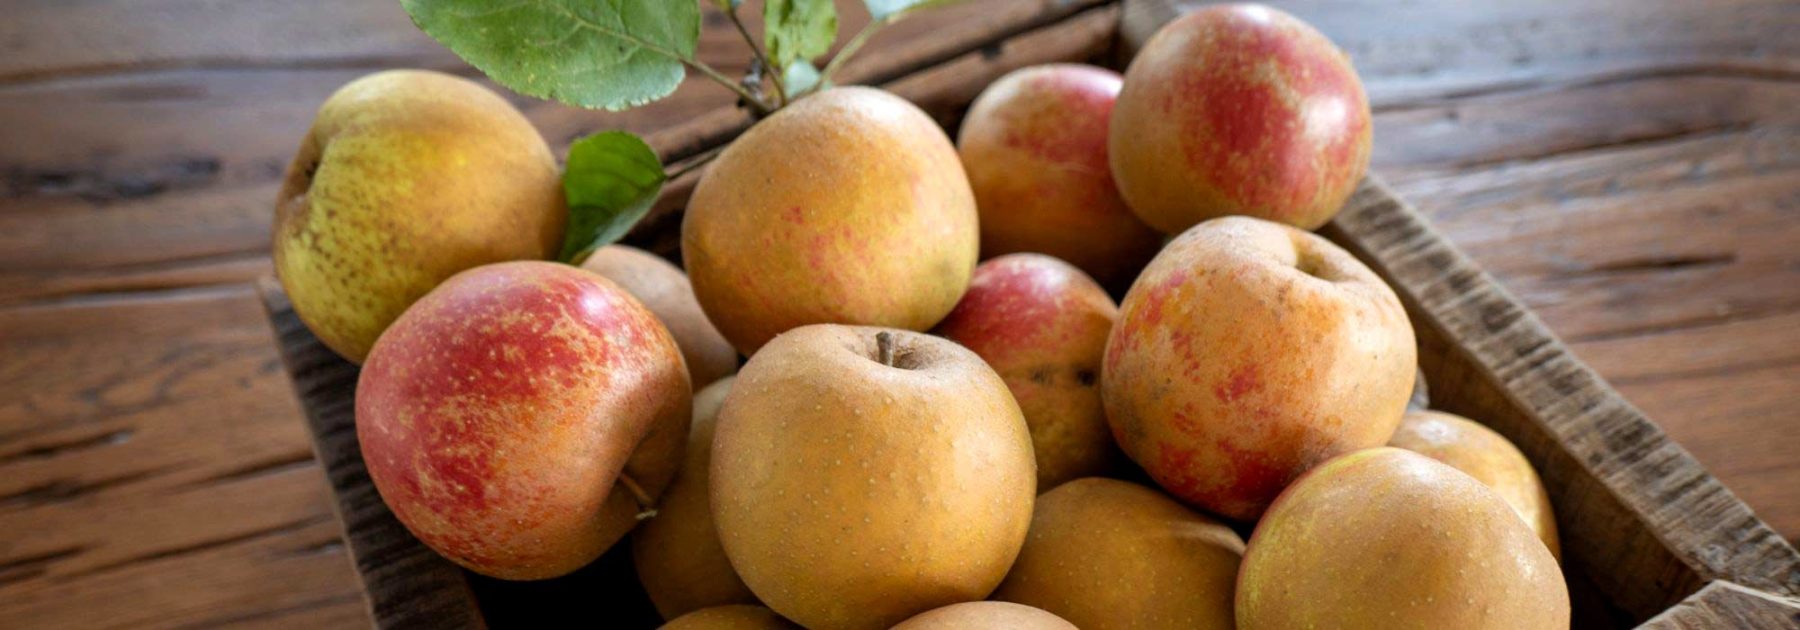 6 variétés de pommes tardives